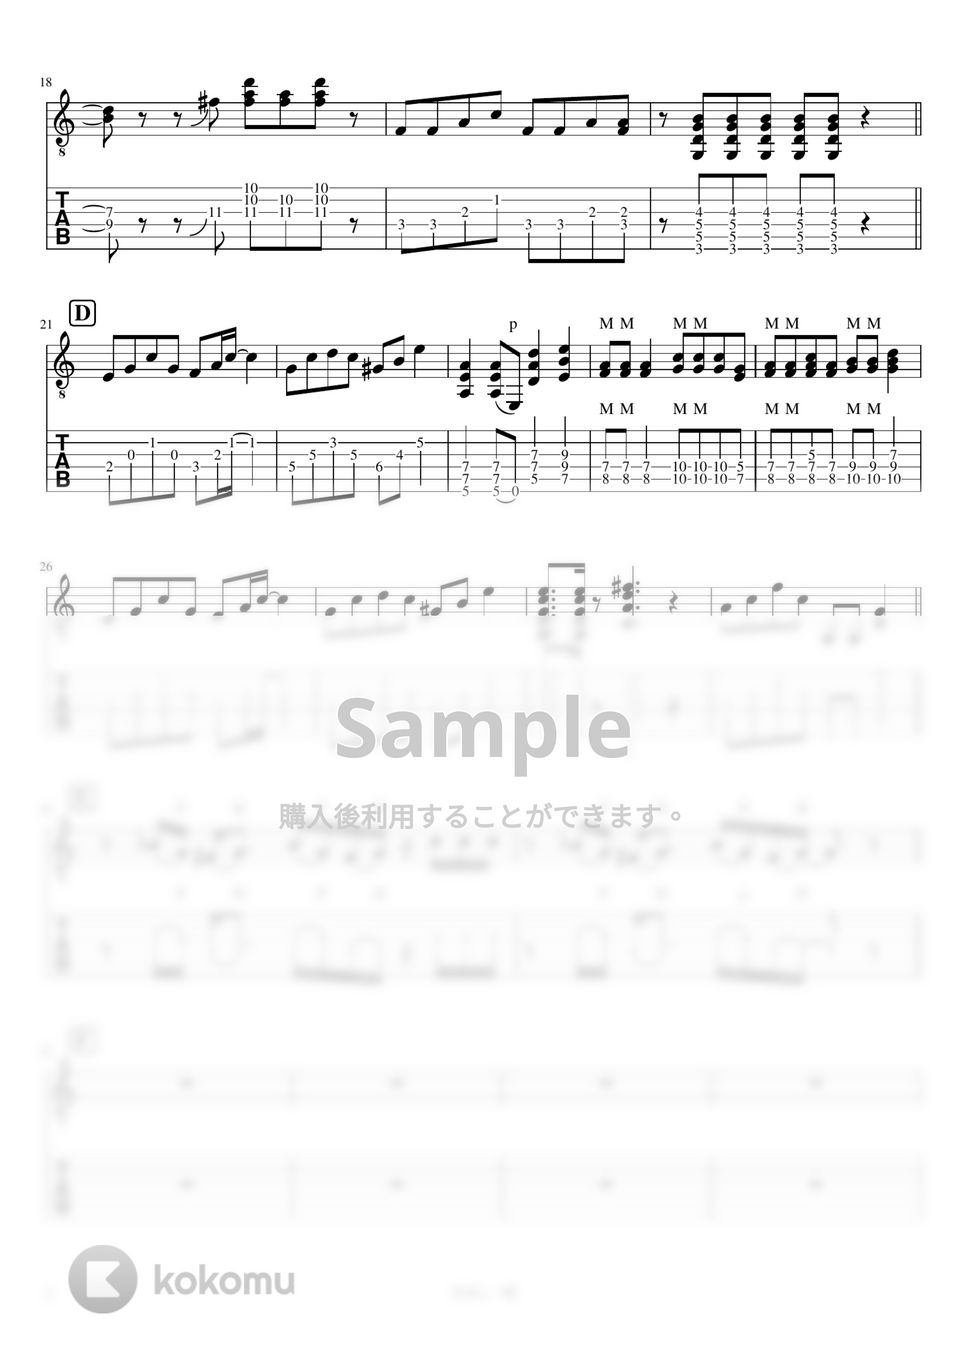 マカロニえんぴつ - 青春と一瞬 - Strings ver. THE FIRST TAKE (リードギター) by J-ROCKギターチャンネル